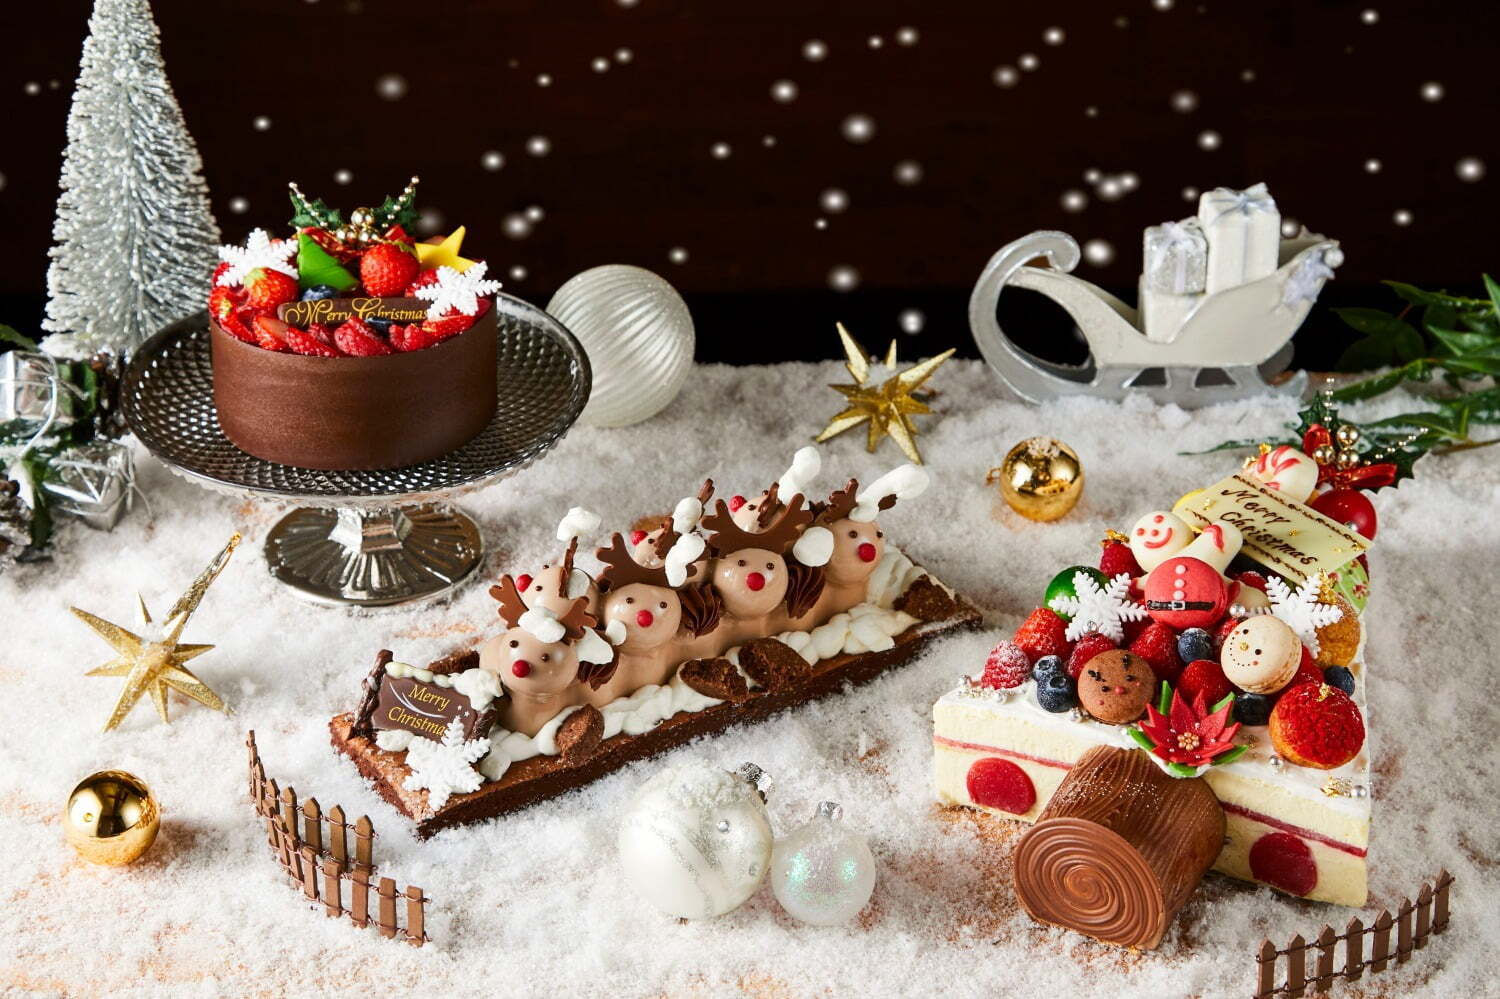 ハイアット リージェンシー 東京のクリスマスケーキ21 飾り付けを楽しむ ツリー のケーキ ファッションプレス